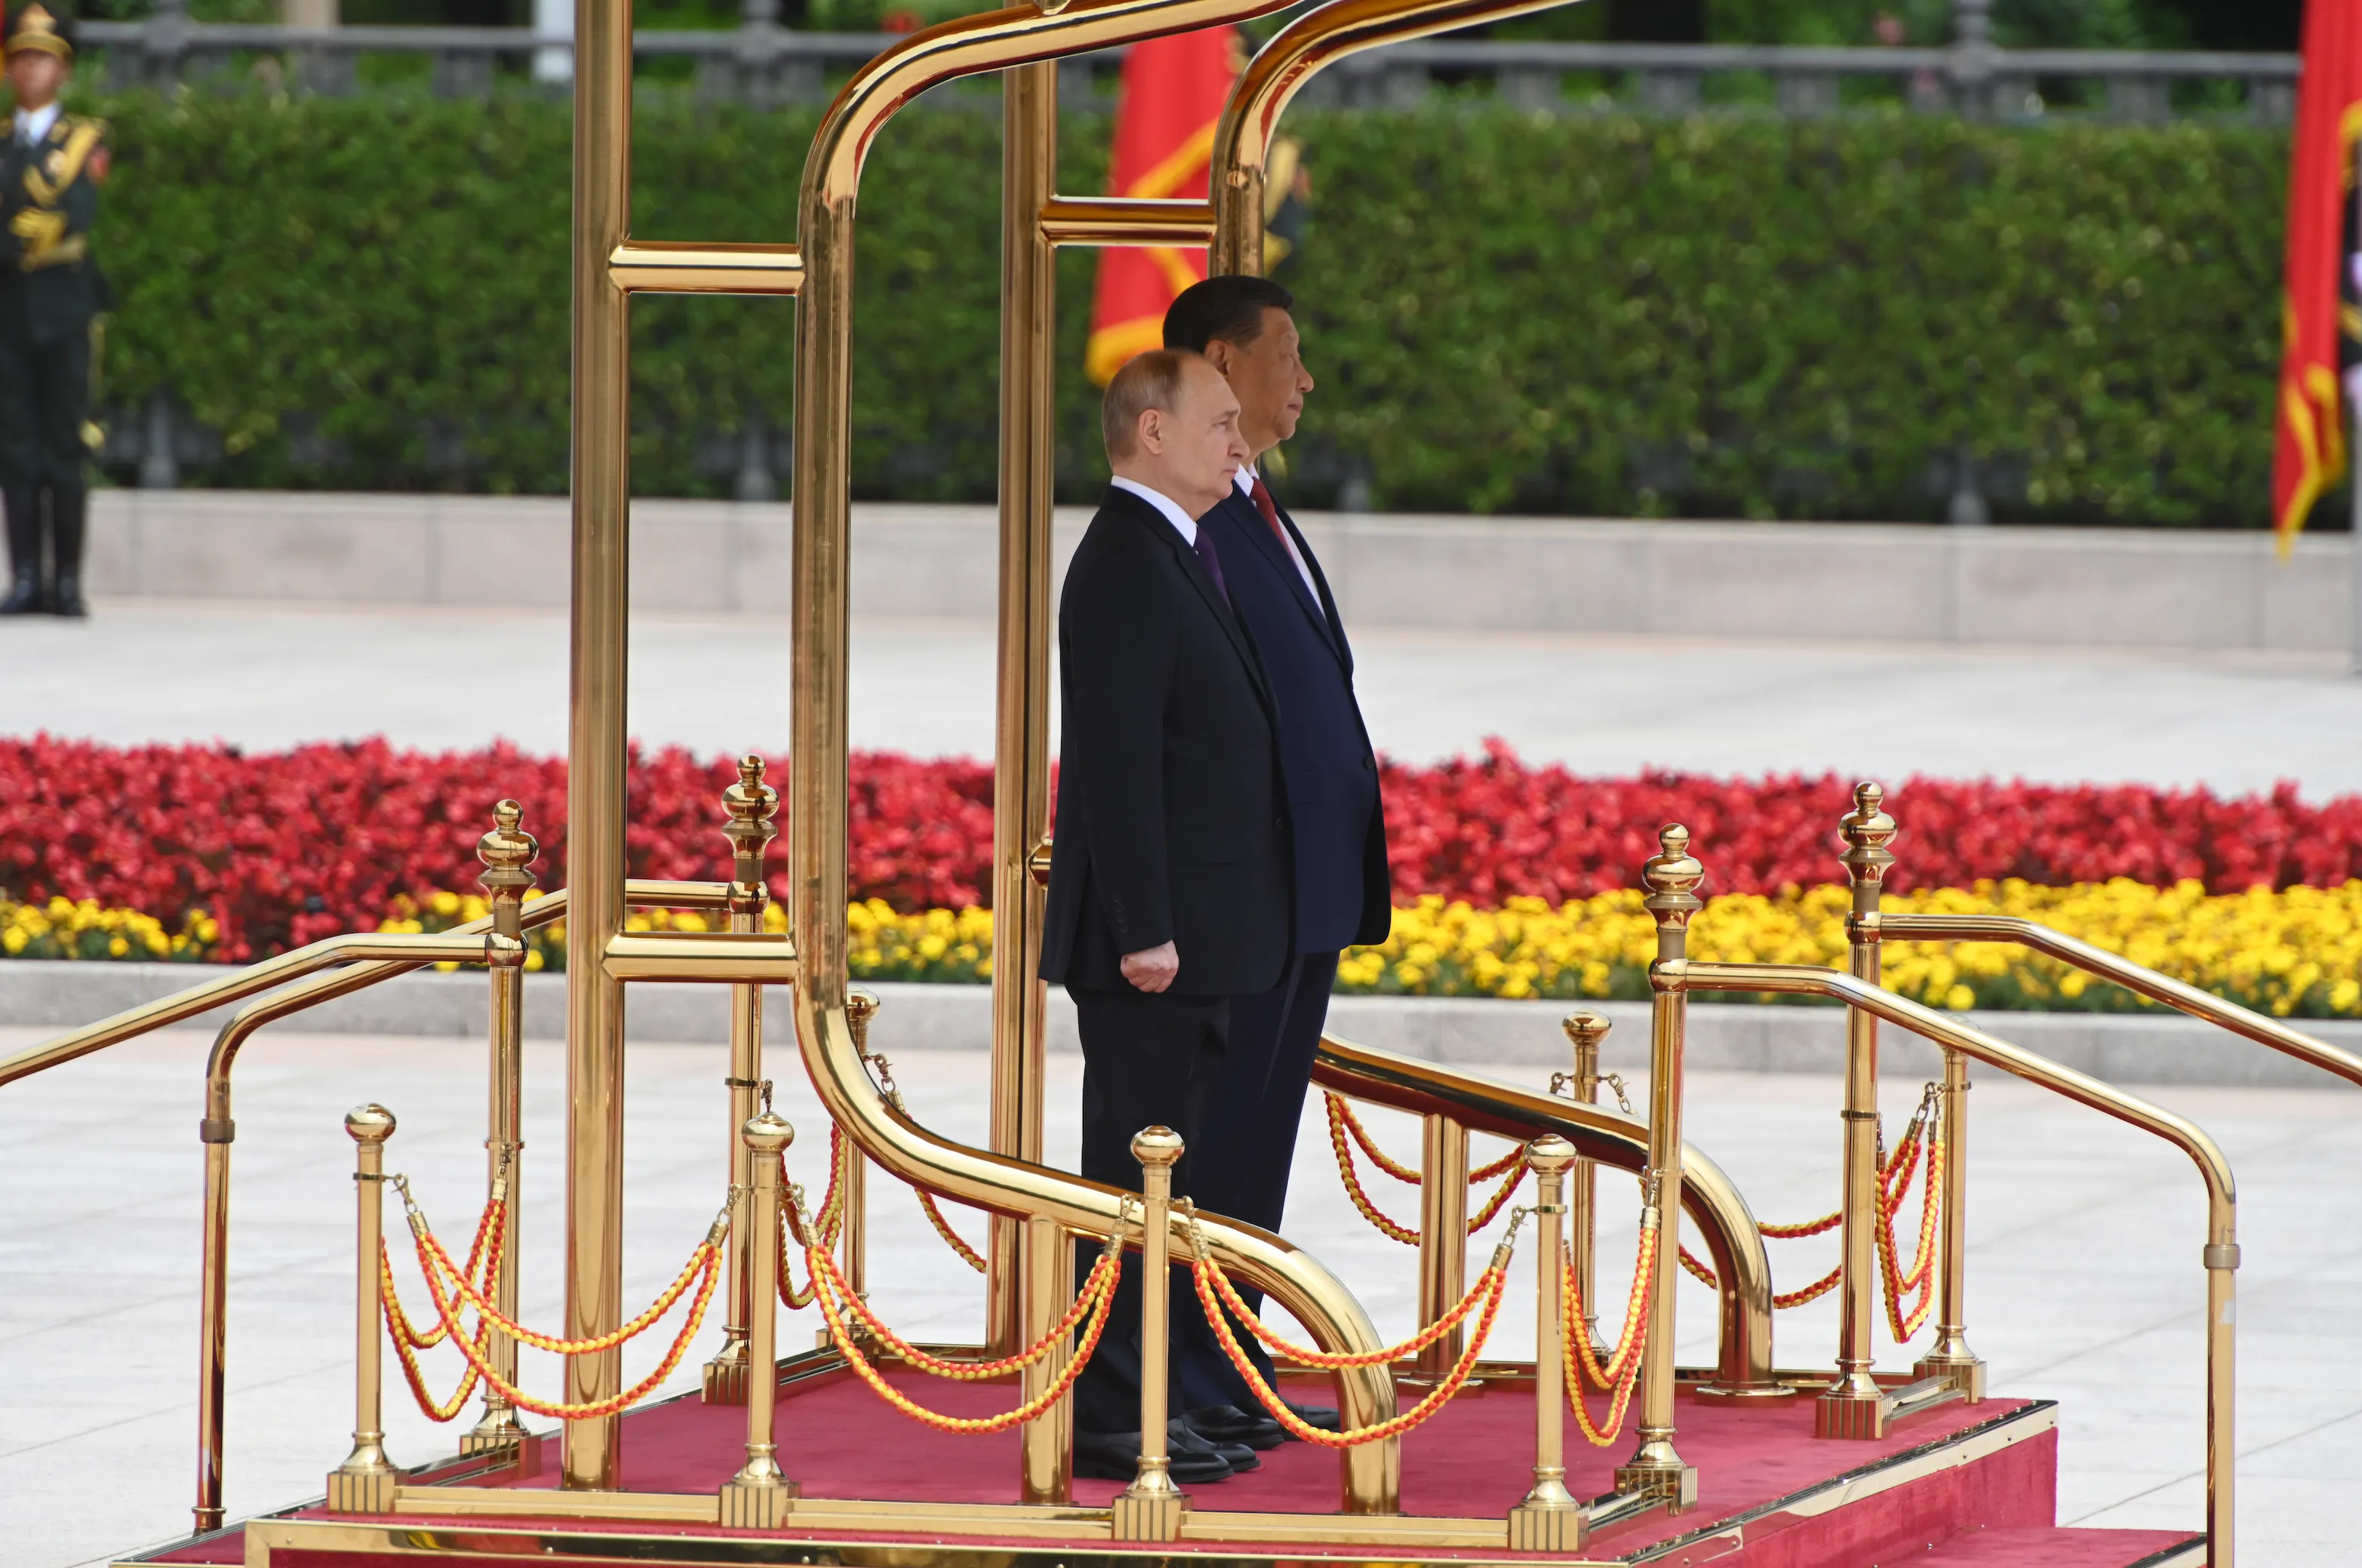 Путин обсудит с Си Цзиньпином китайский мирный план по Украине